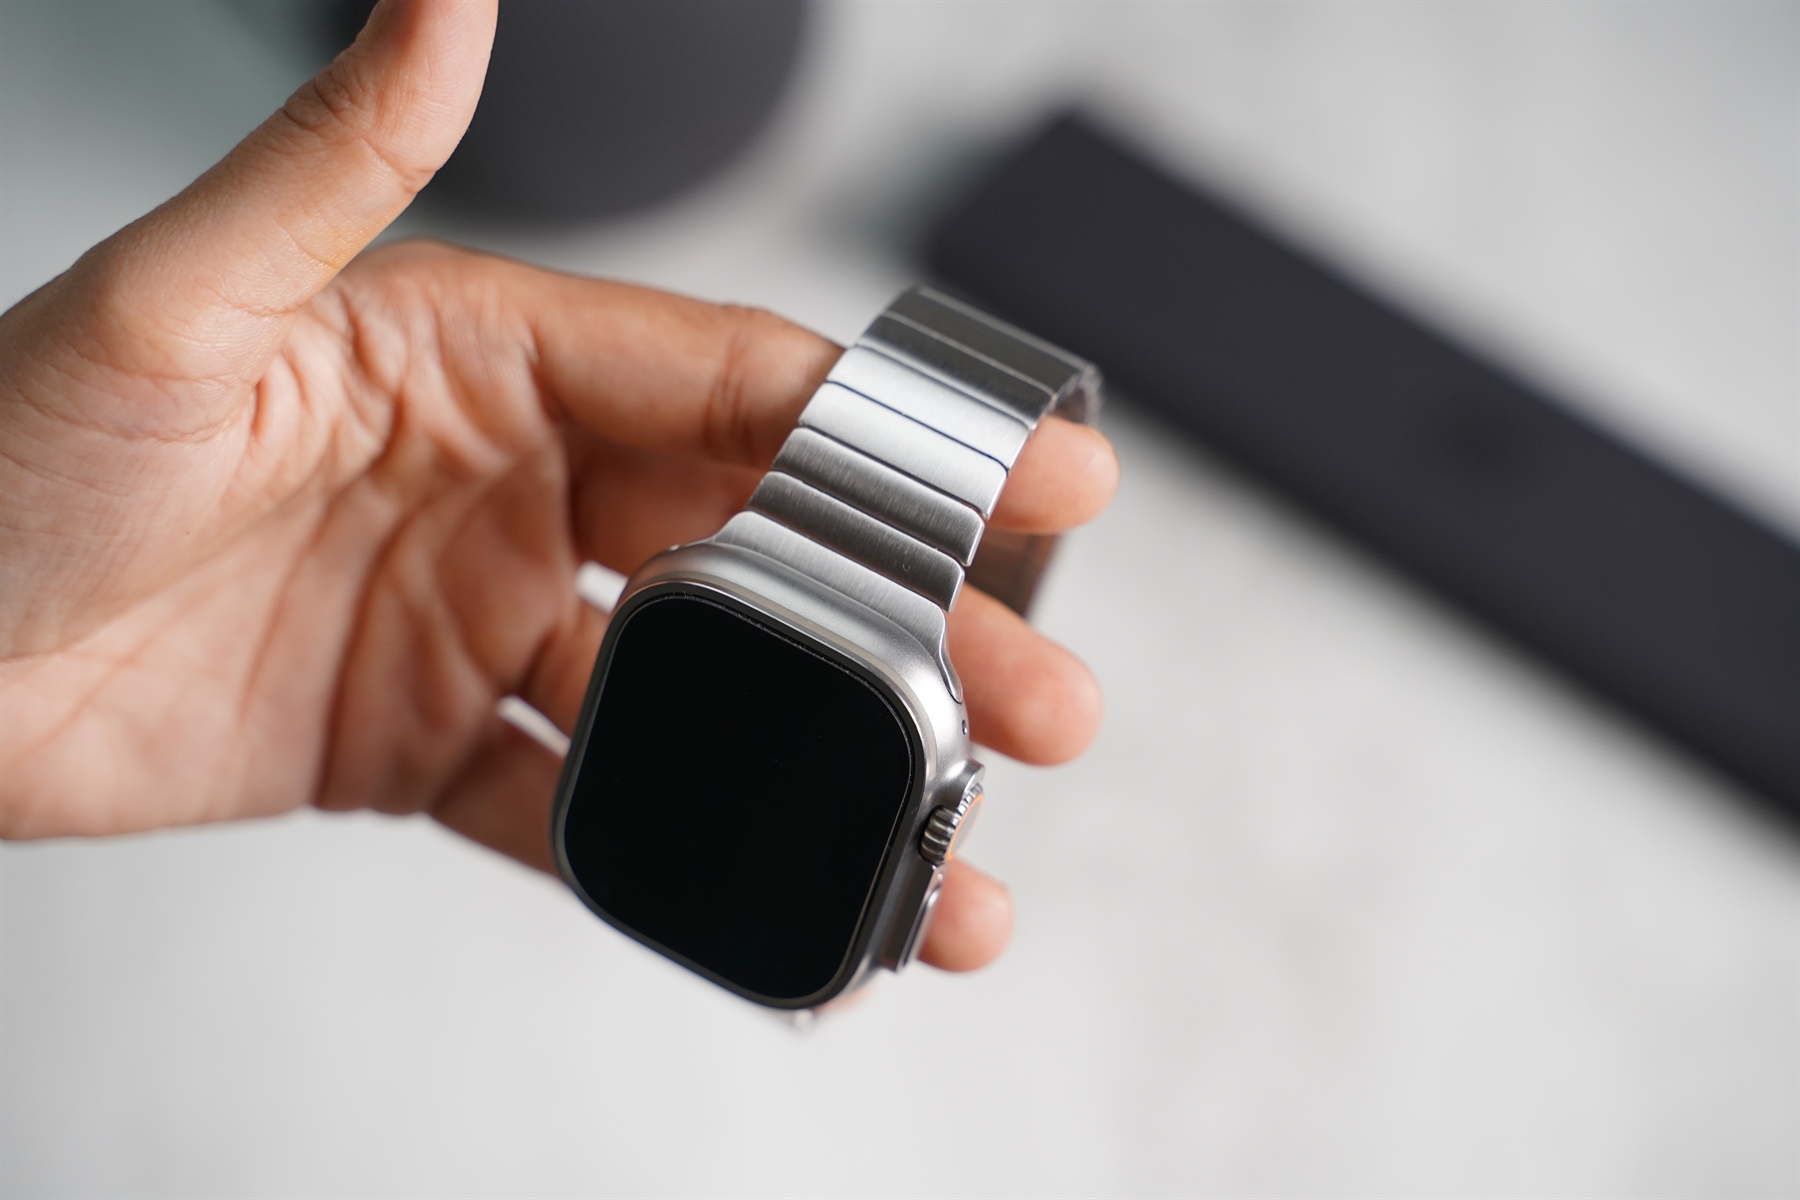 apple watch with bracelets | Apple watch, Apple watch accessories, Apple  watch fashion